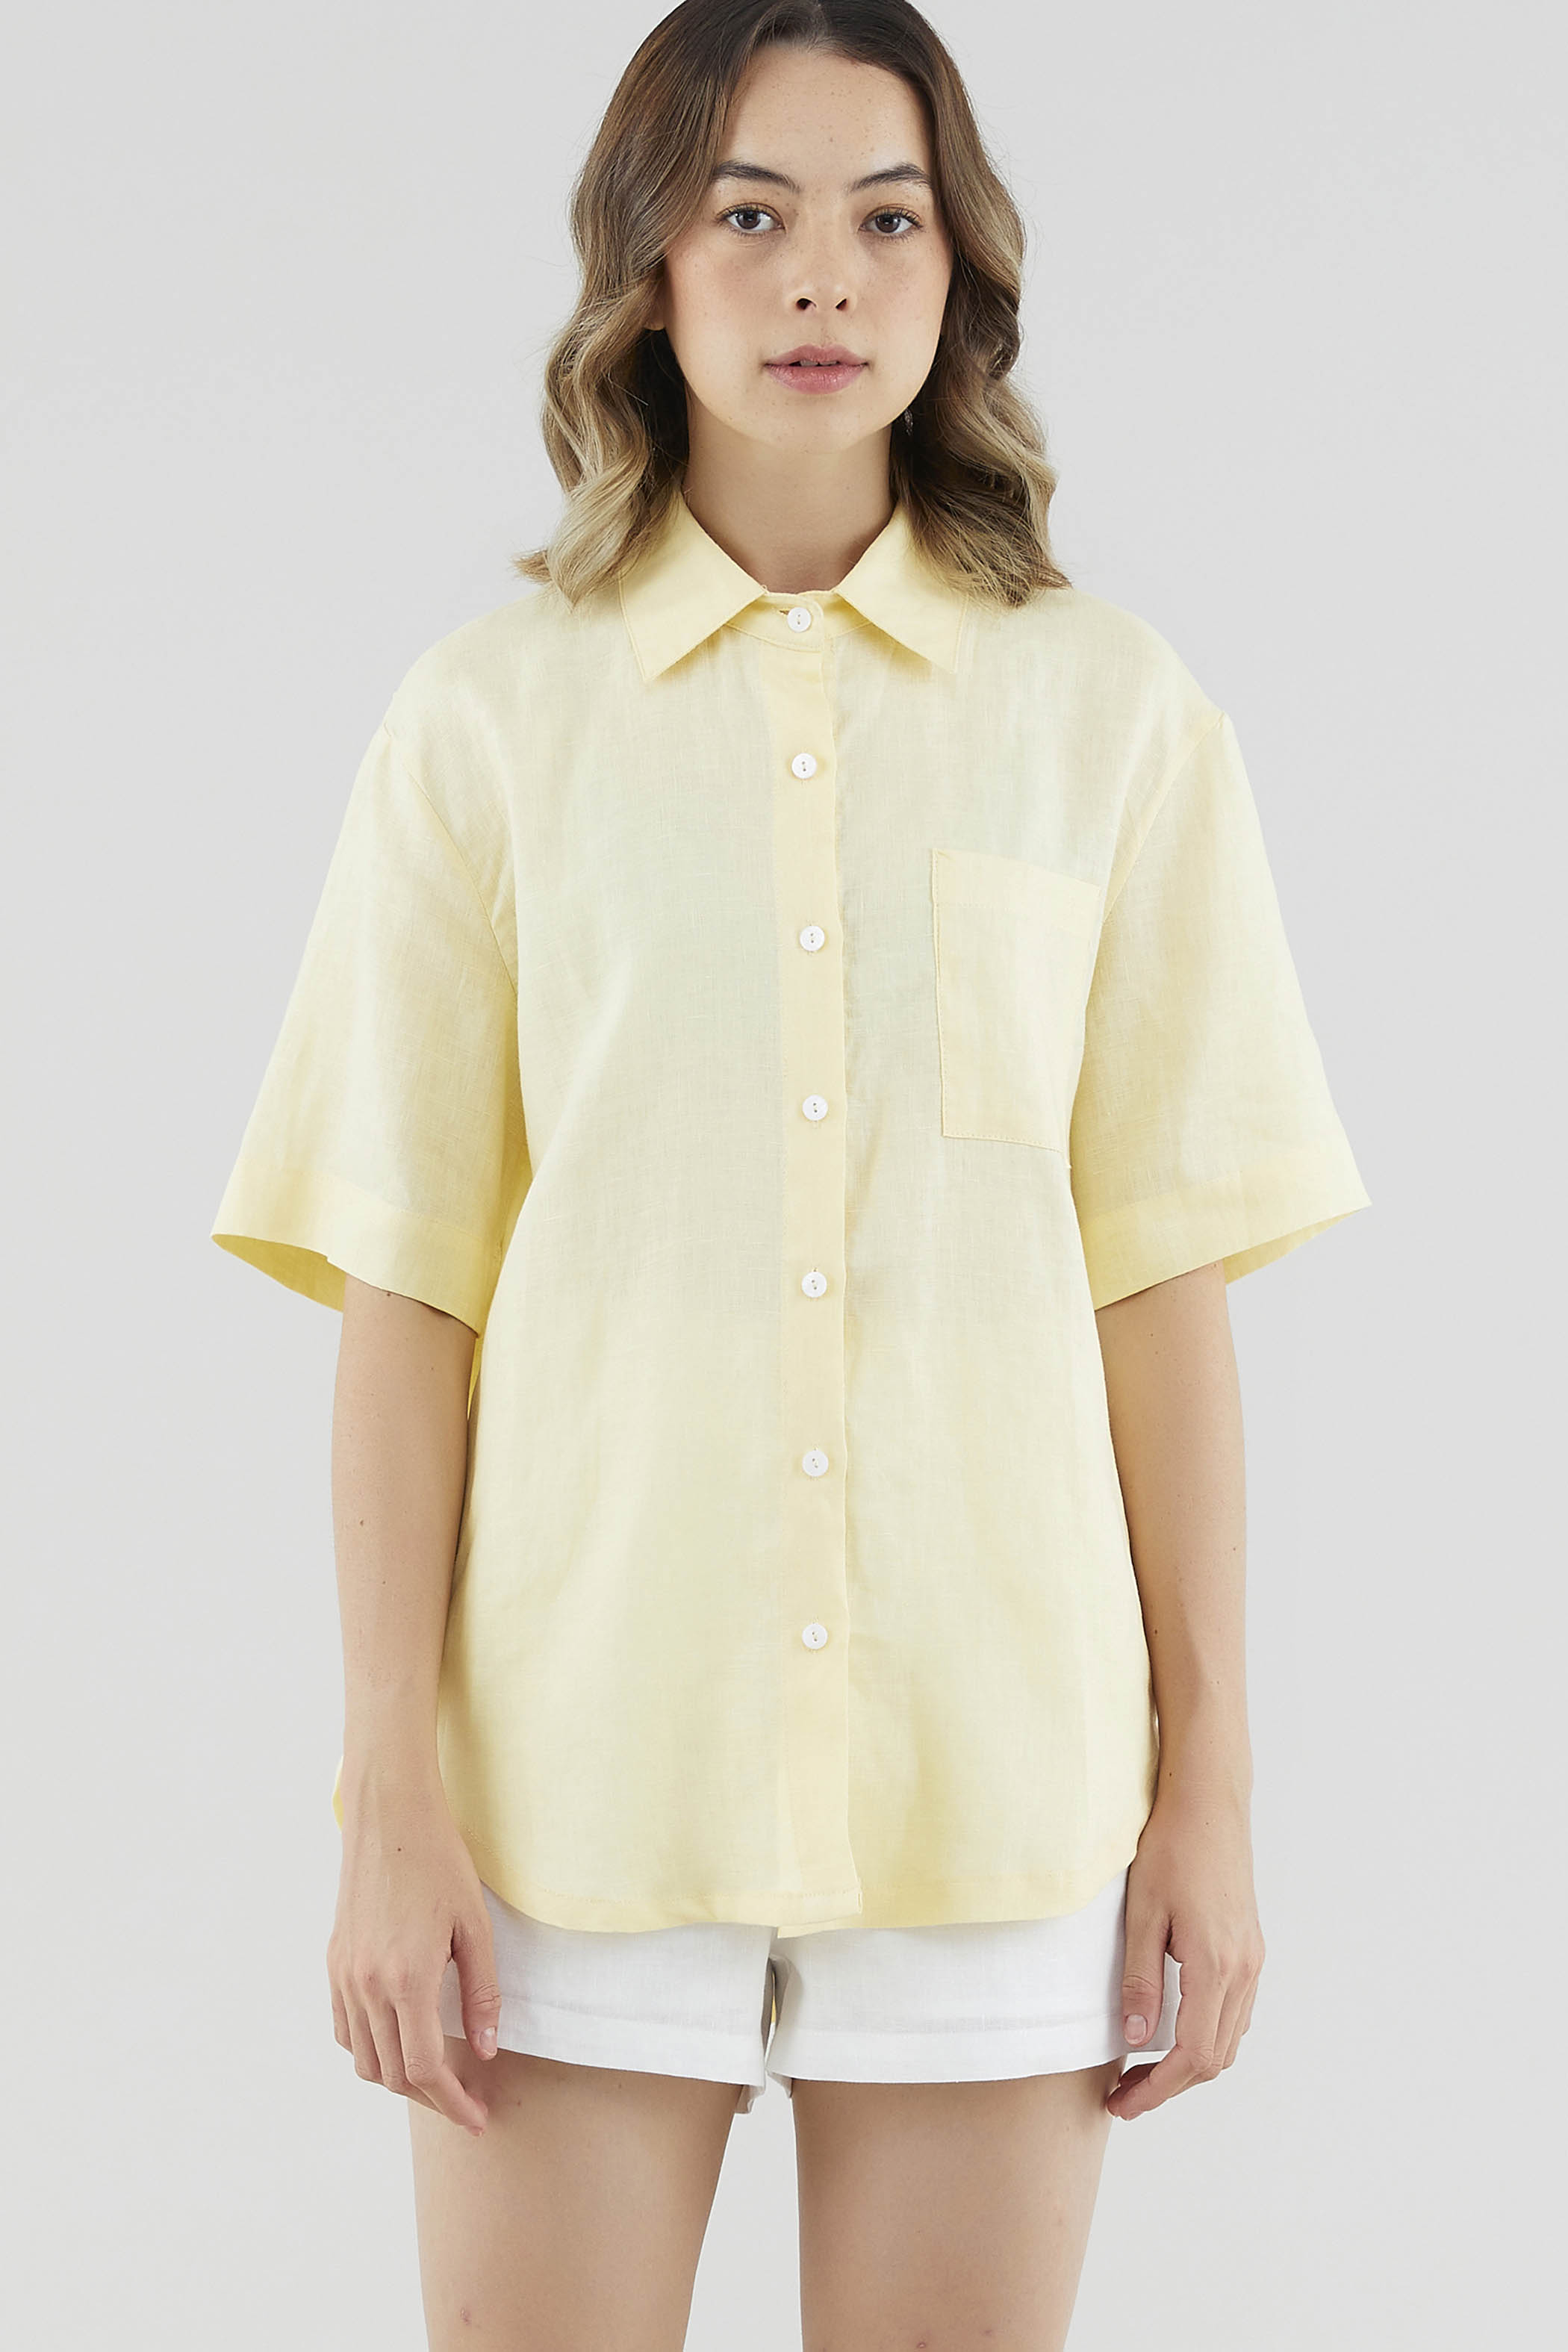 Jeneca Linen Short Sleeve Shirt